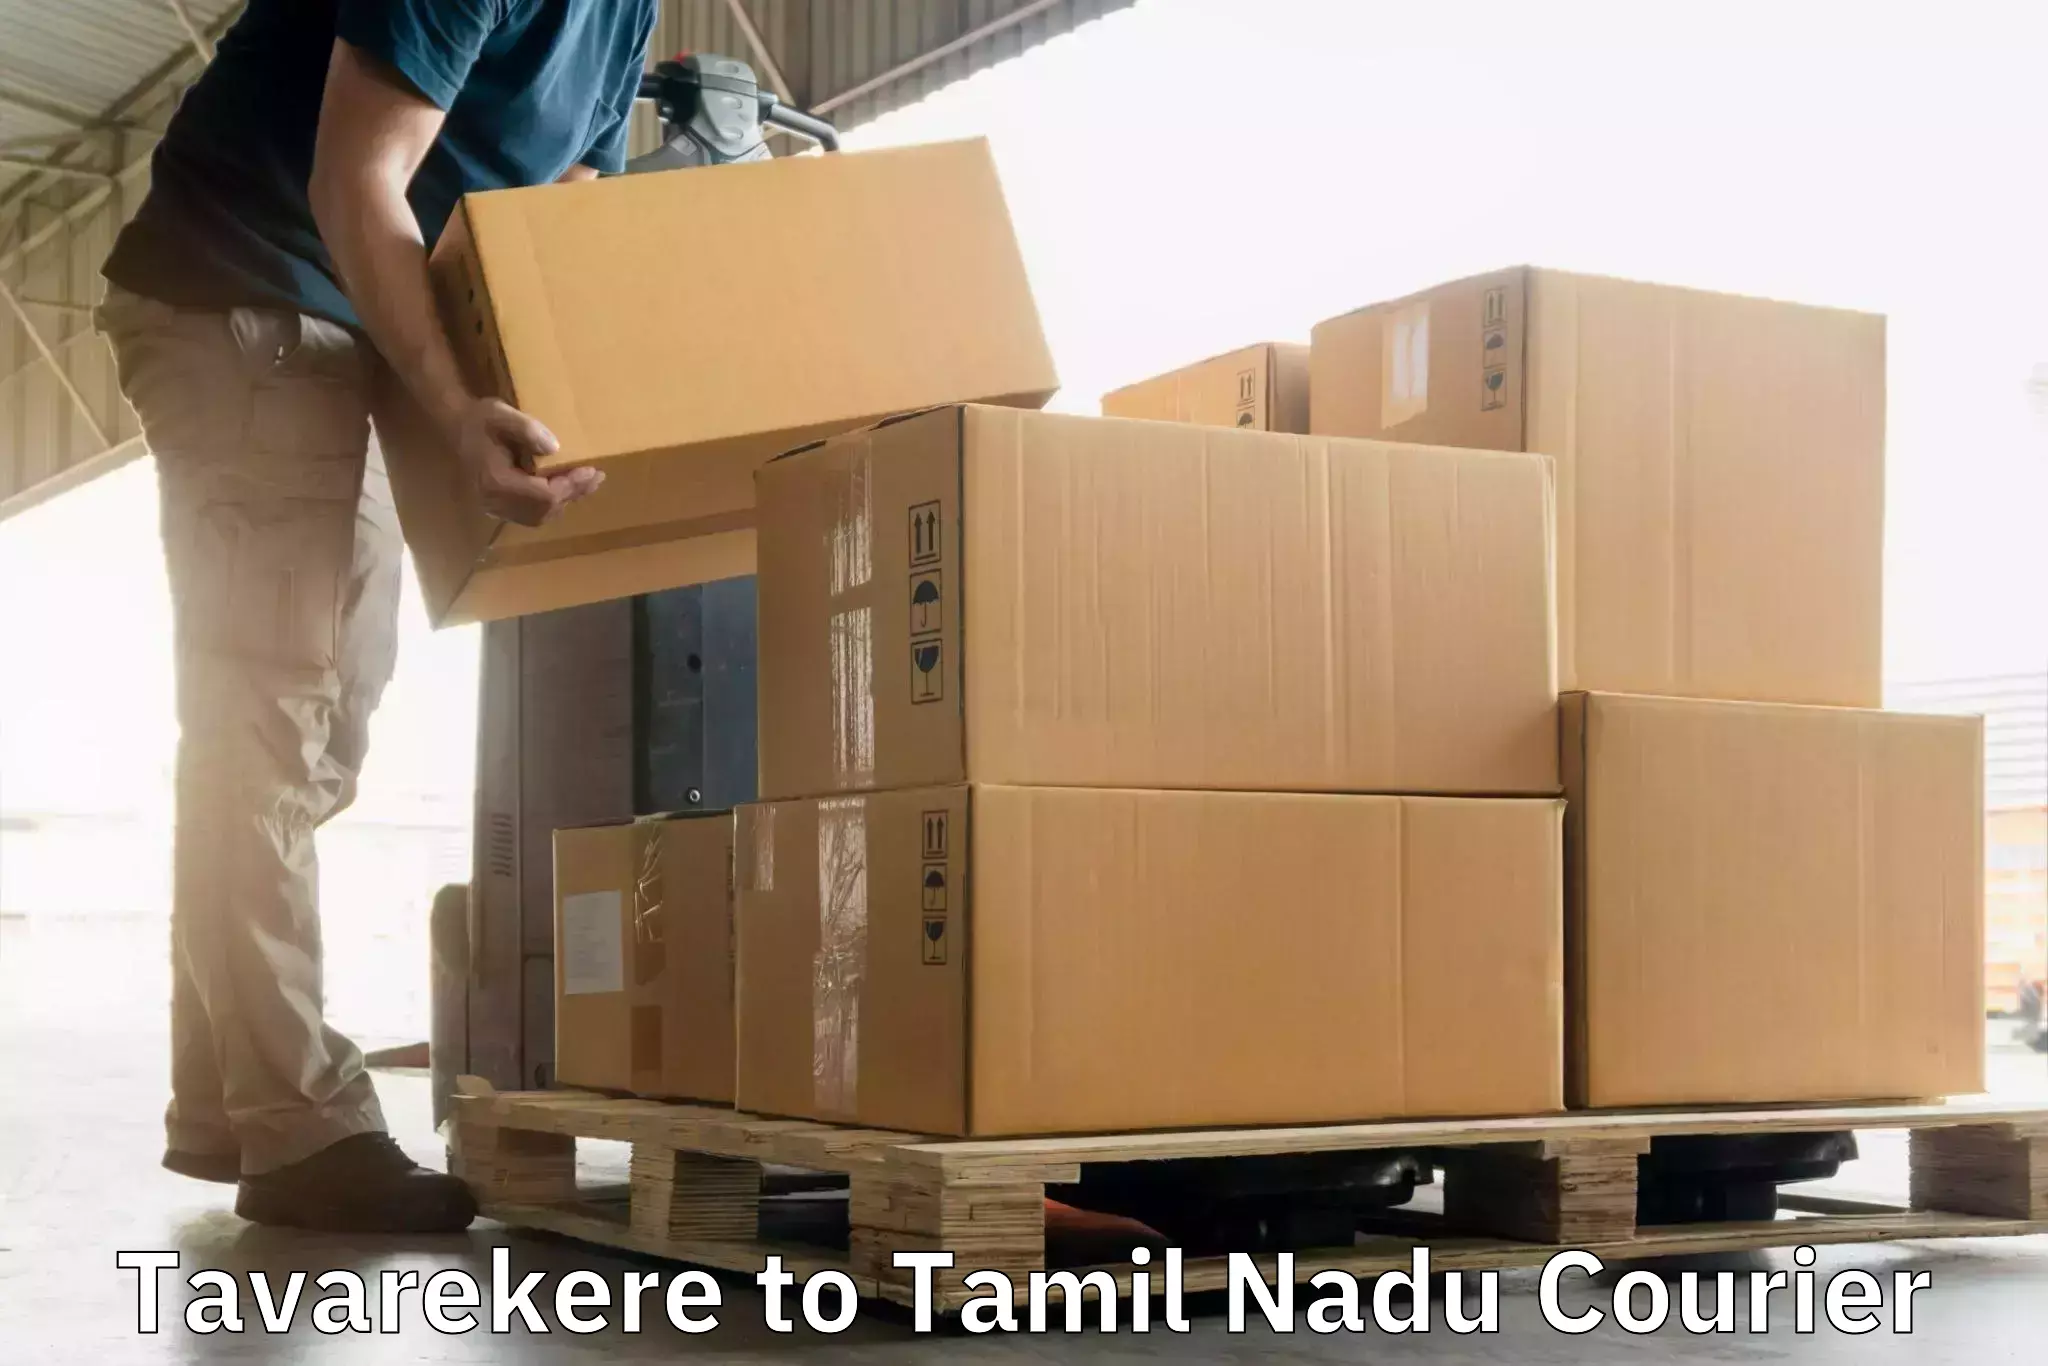 Express shipping Tavarekere to Villupuram